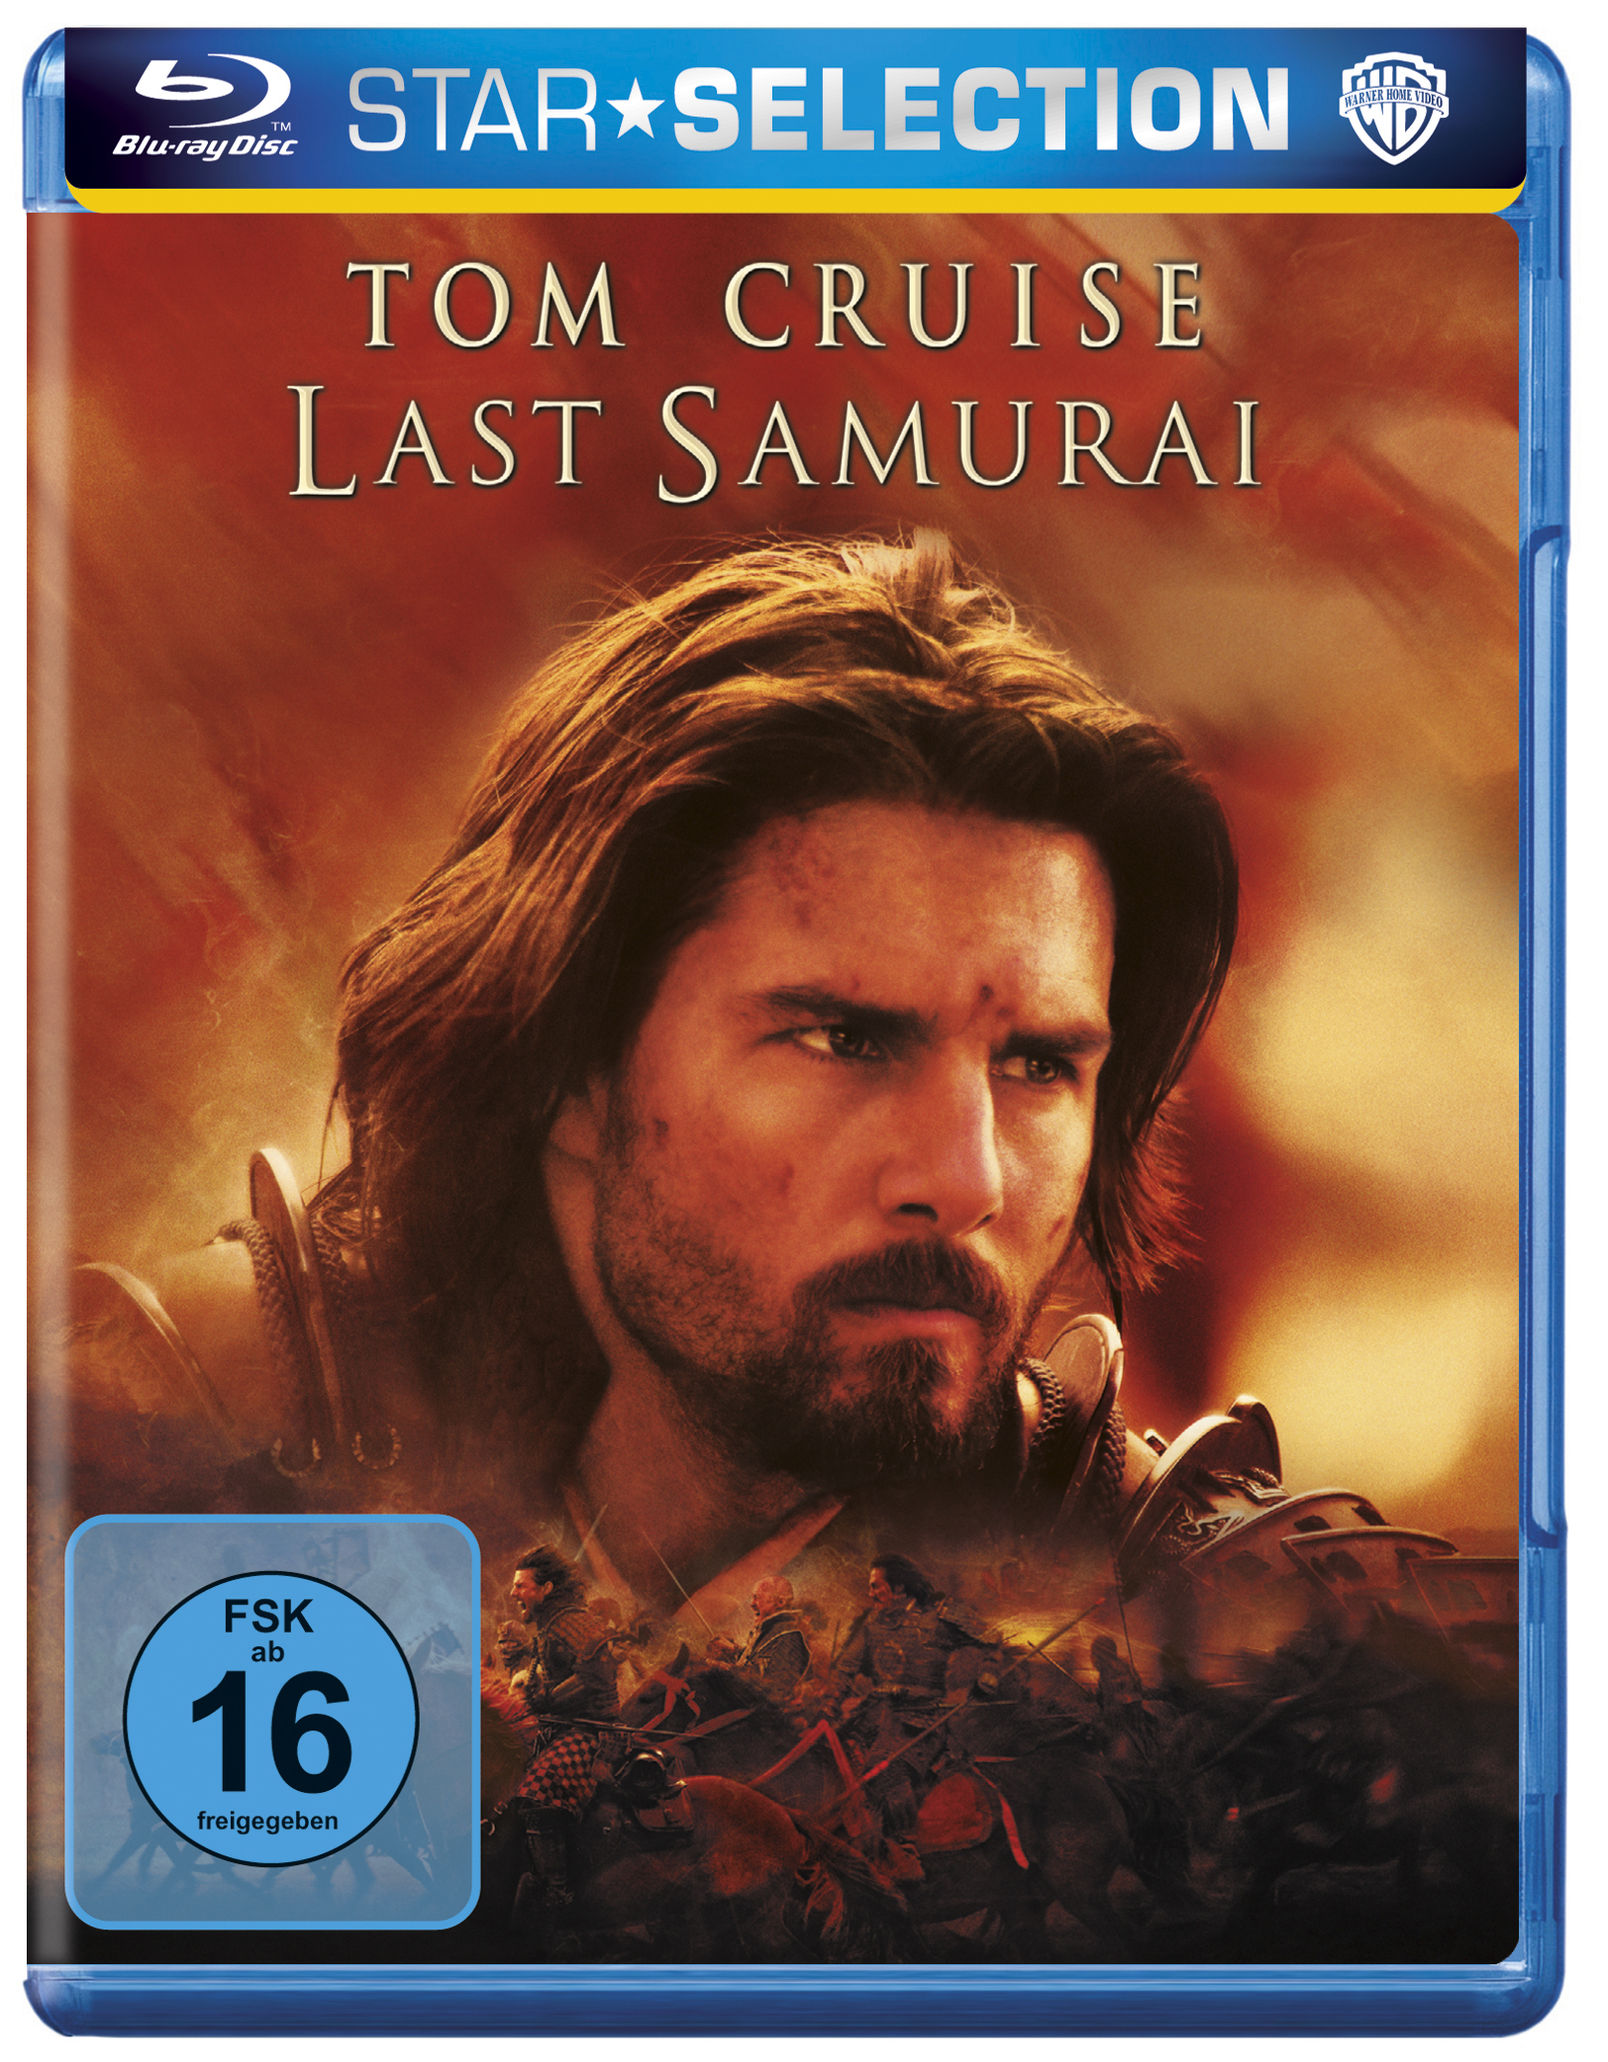 Last Samurai Blu-ray jetzt im Weltbild.at Shop bestellen